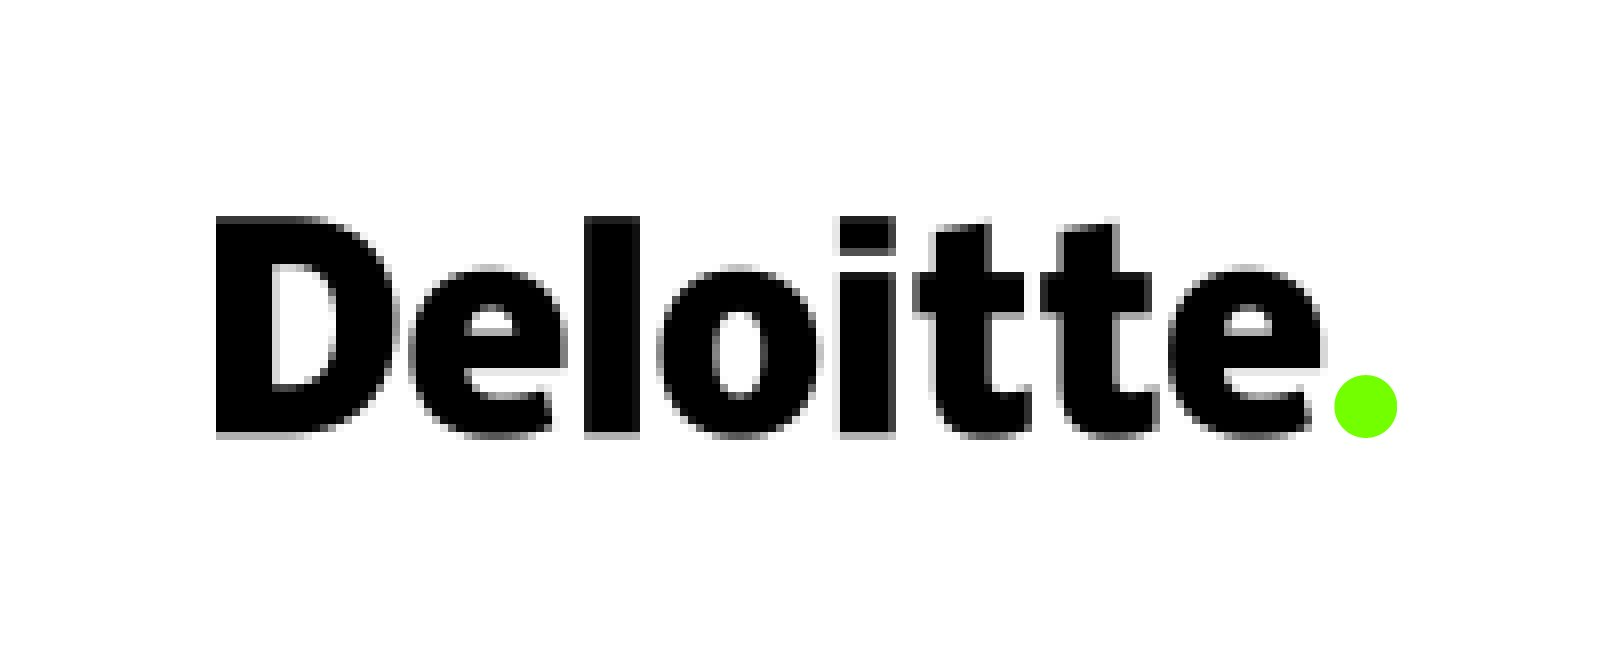 Deloitte sponsors FinTech North Leeds 2018.